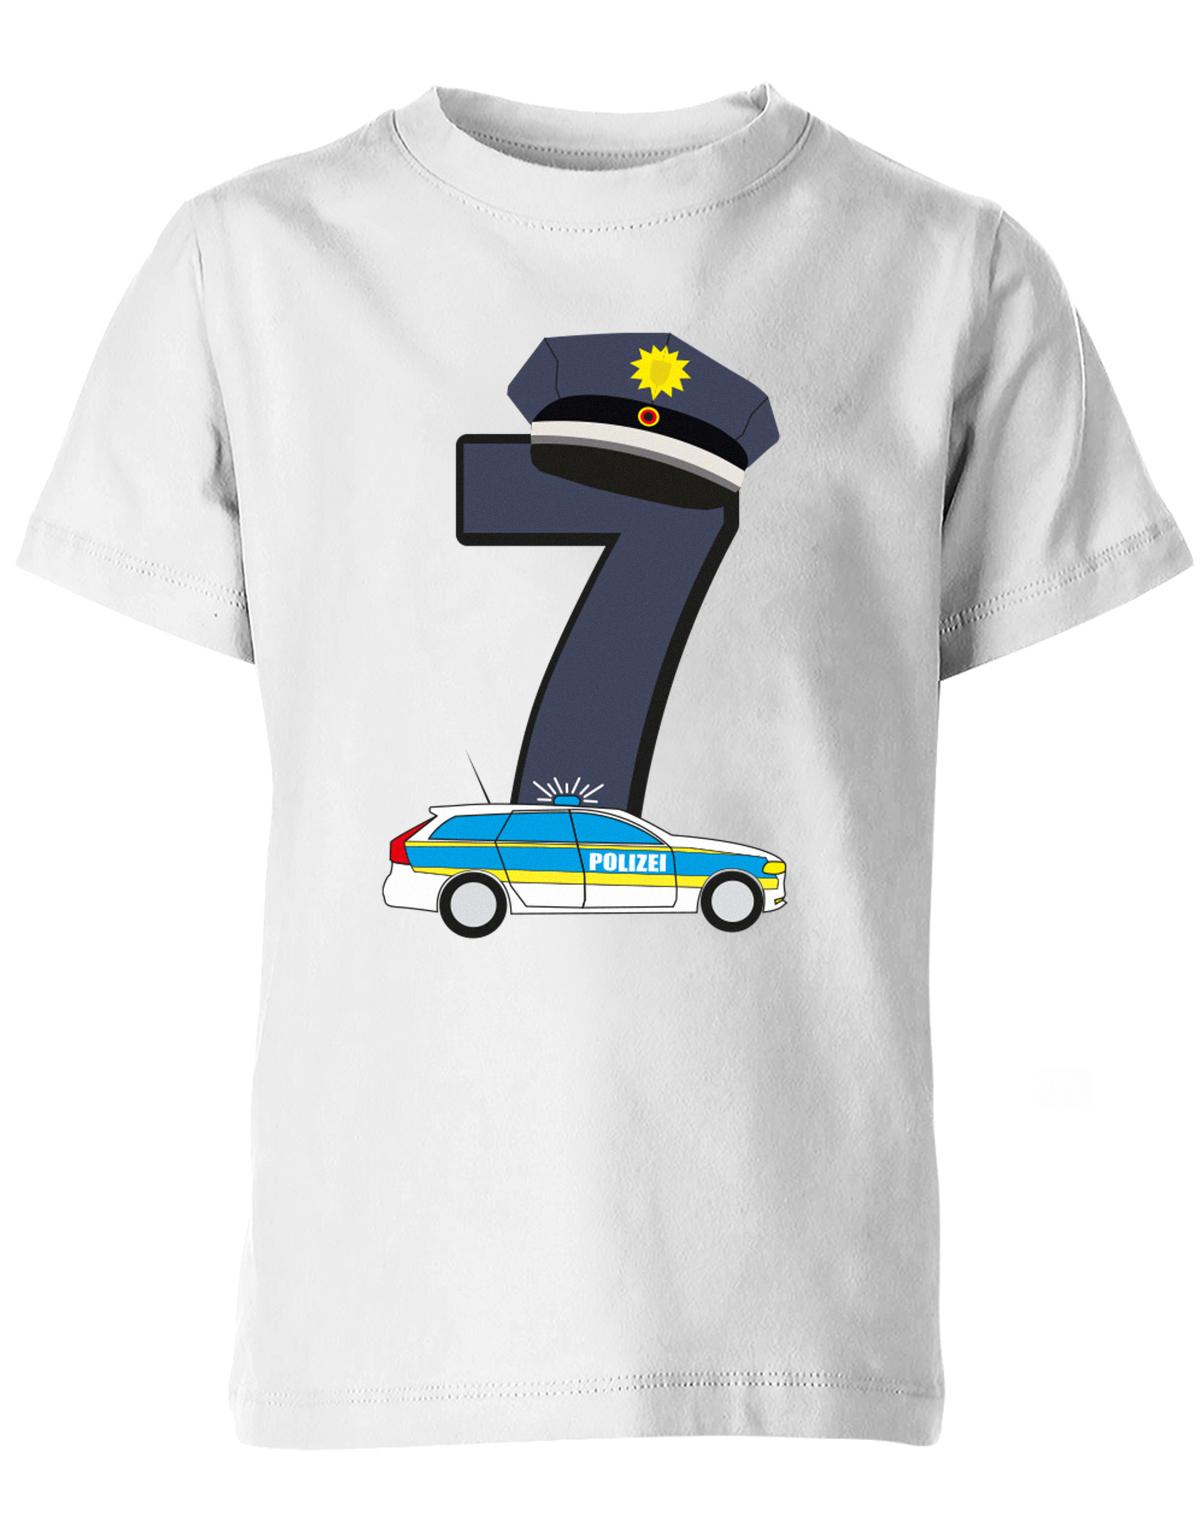 ich-bin-7-polizei-geburtstag-kinder-shirt-weiss